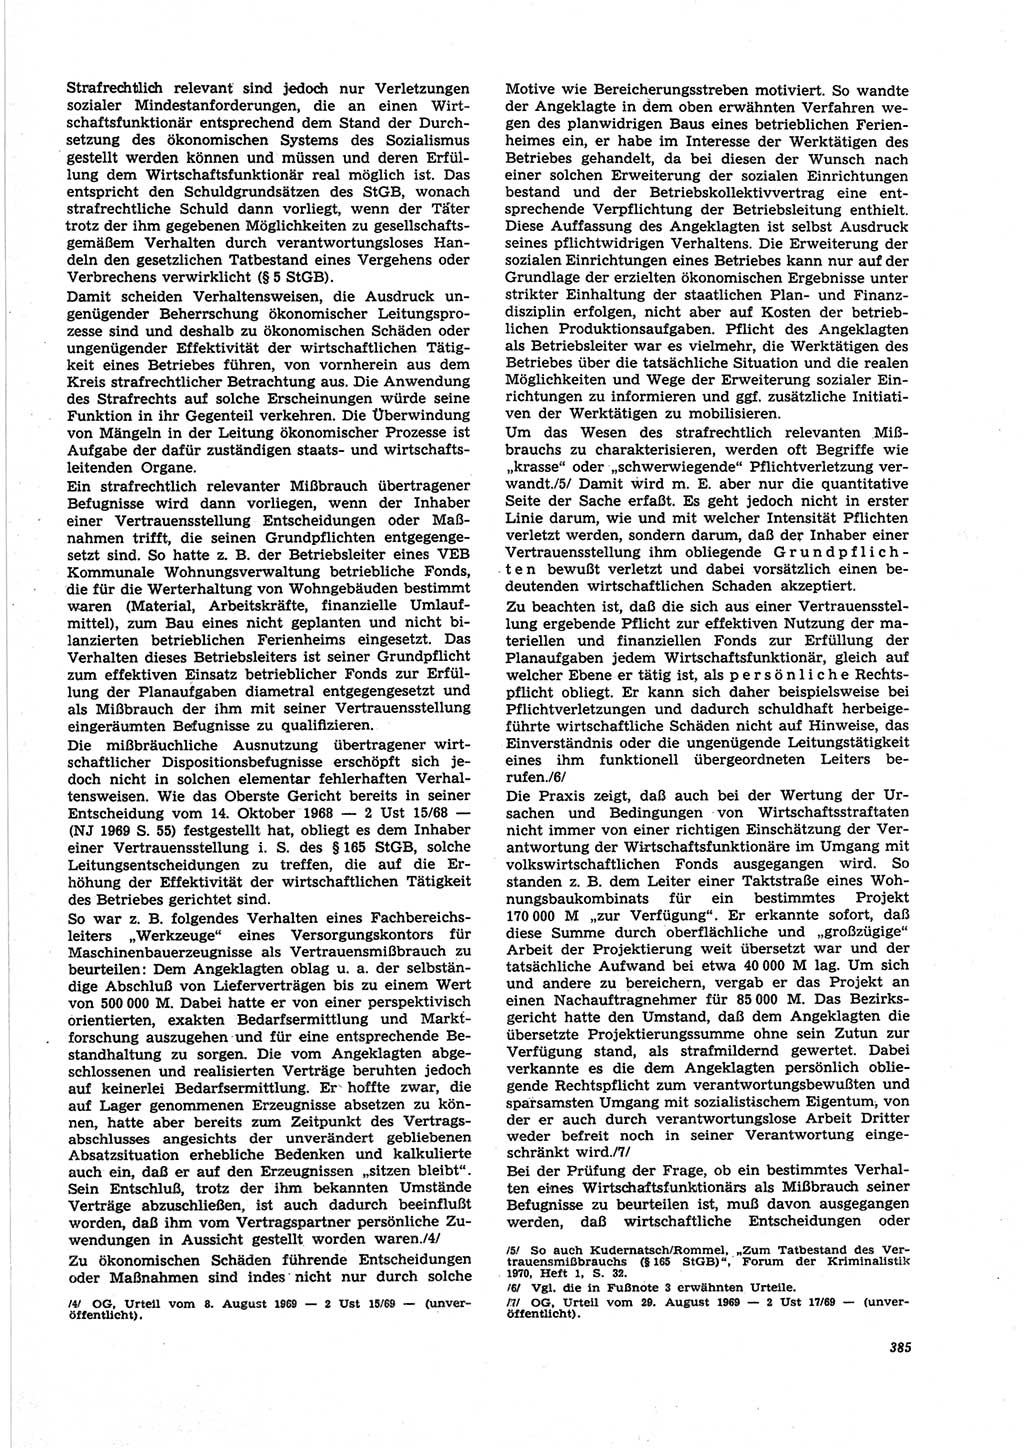 Neue Justiz (NJ), Zeitschrift für Recht und Rechtswissenschaft [Deutsche Demokratische Republik (DDR)], 25. Jahrgang 1971, Seite 385 (NJ DDR 1971, S. 385)